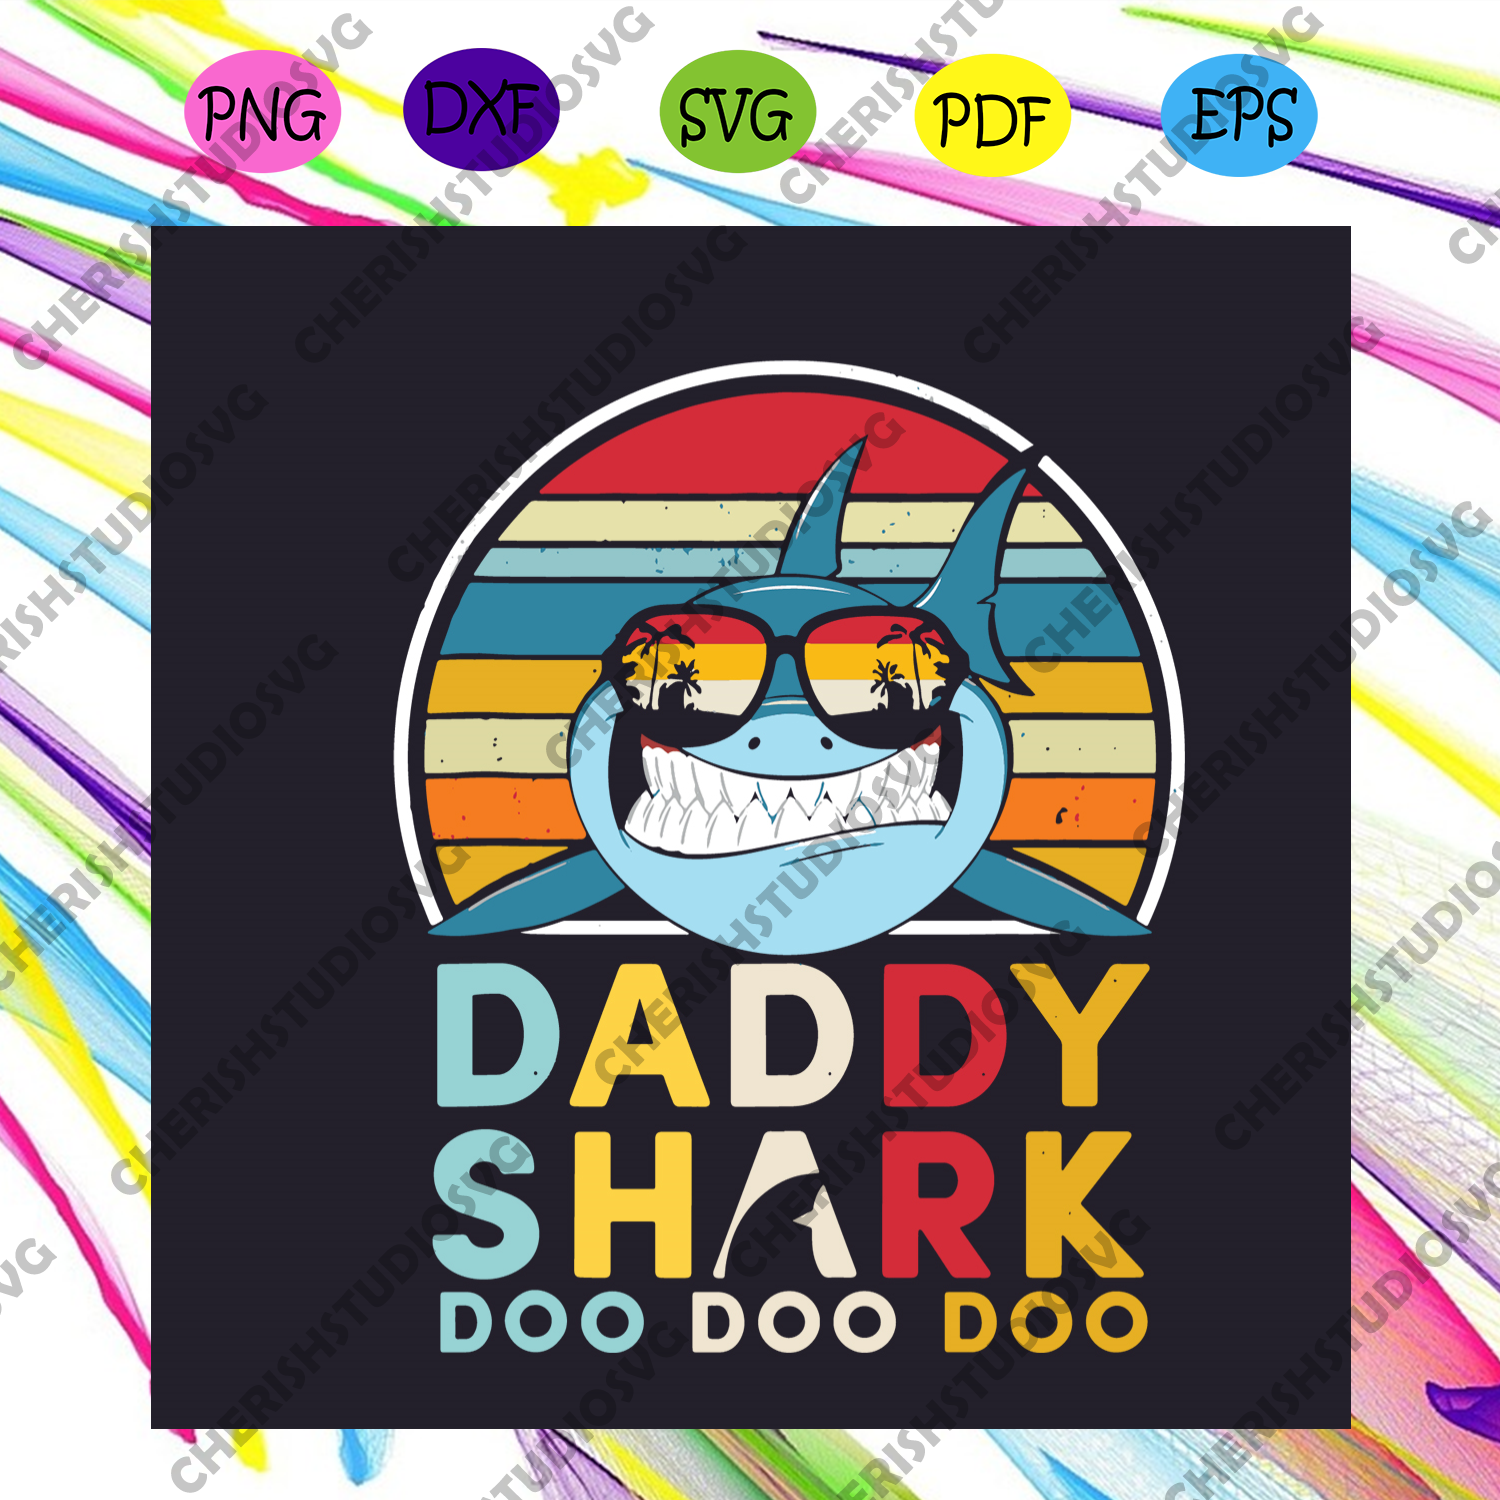 Download Daddy Shark Doo Doo Doo Fathers Day Svg Fathers Day Svg Daddy Shark Cherishsvgstudio